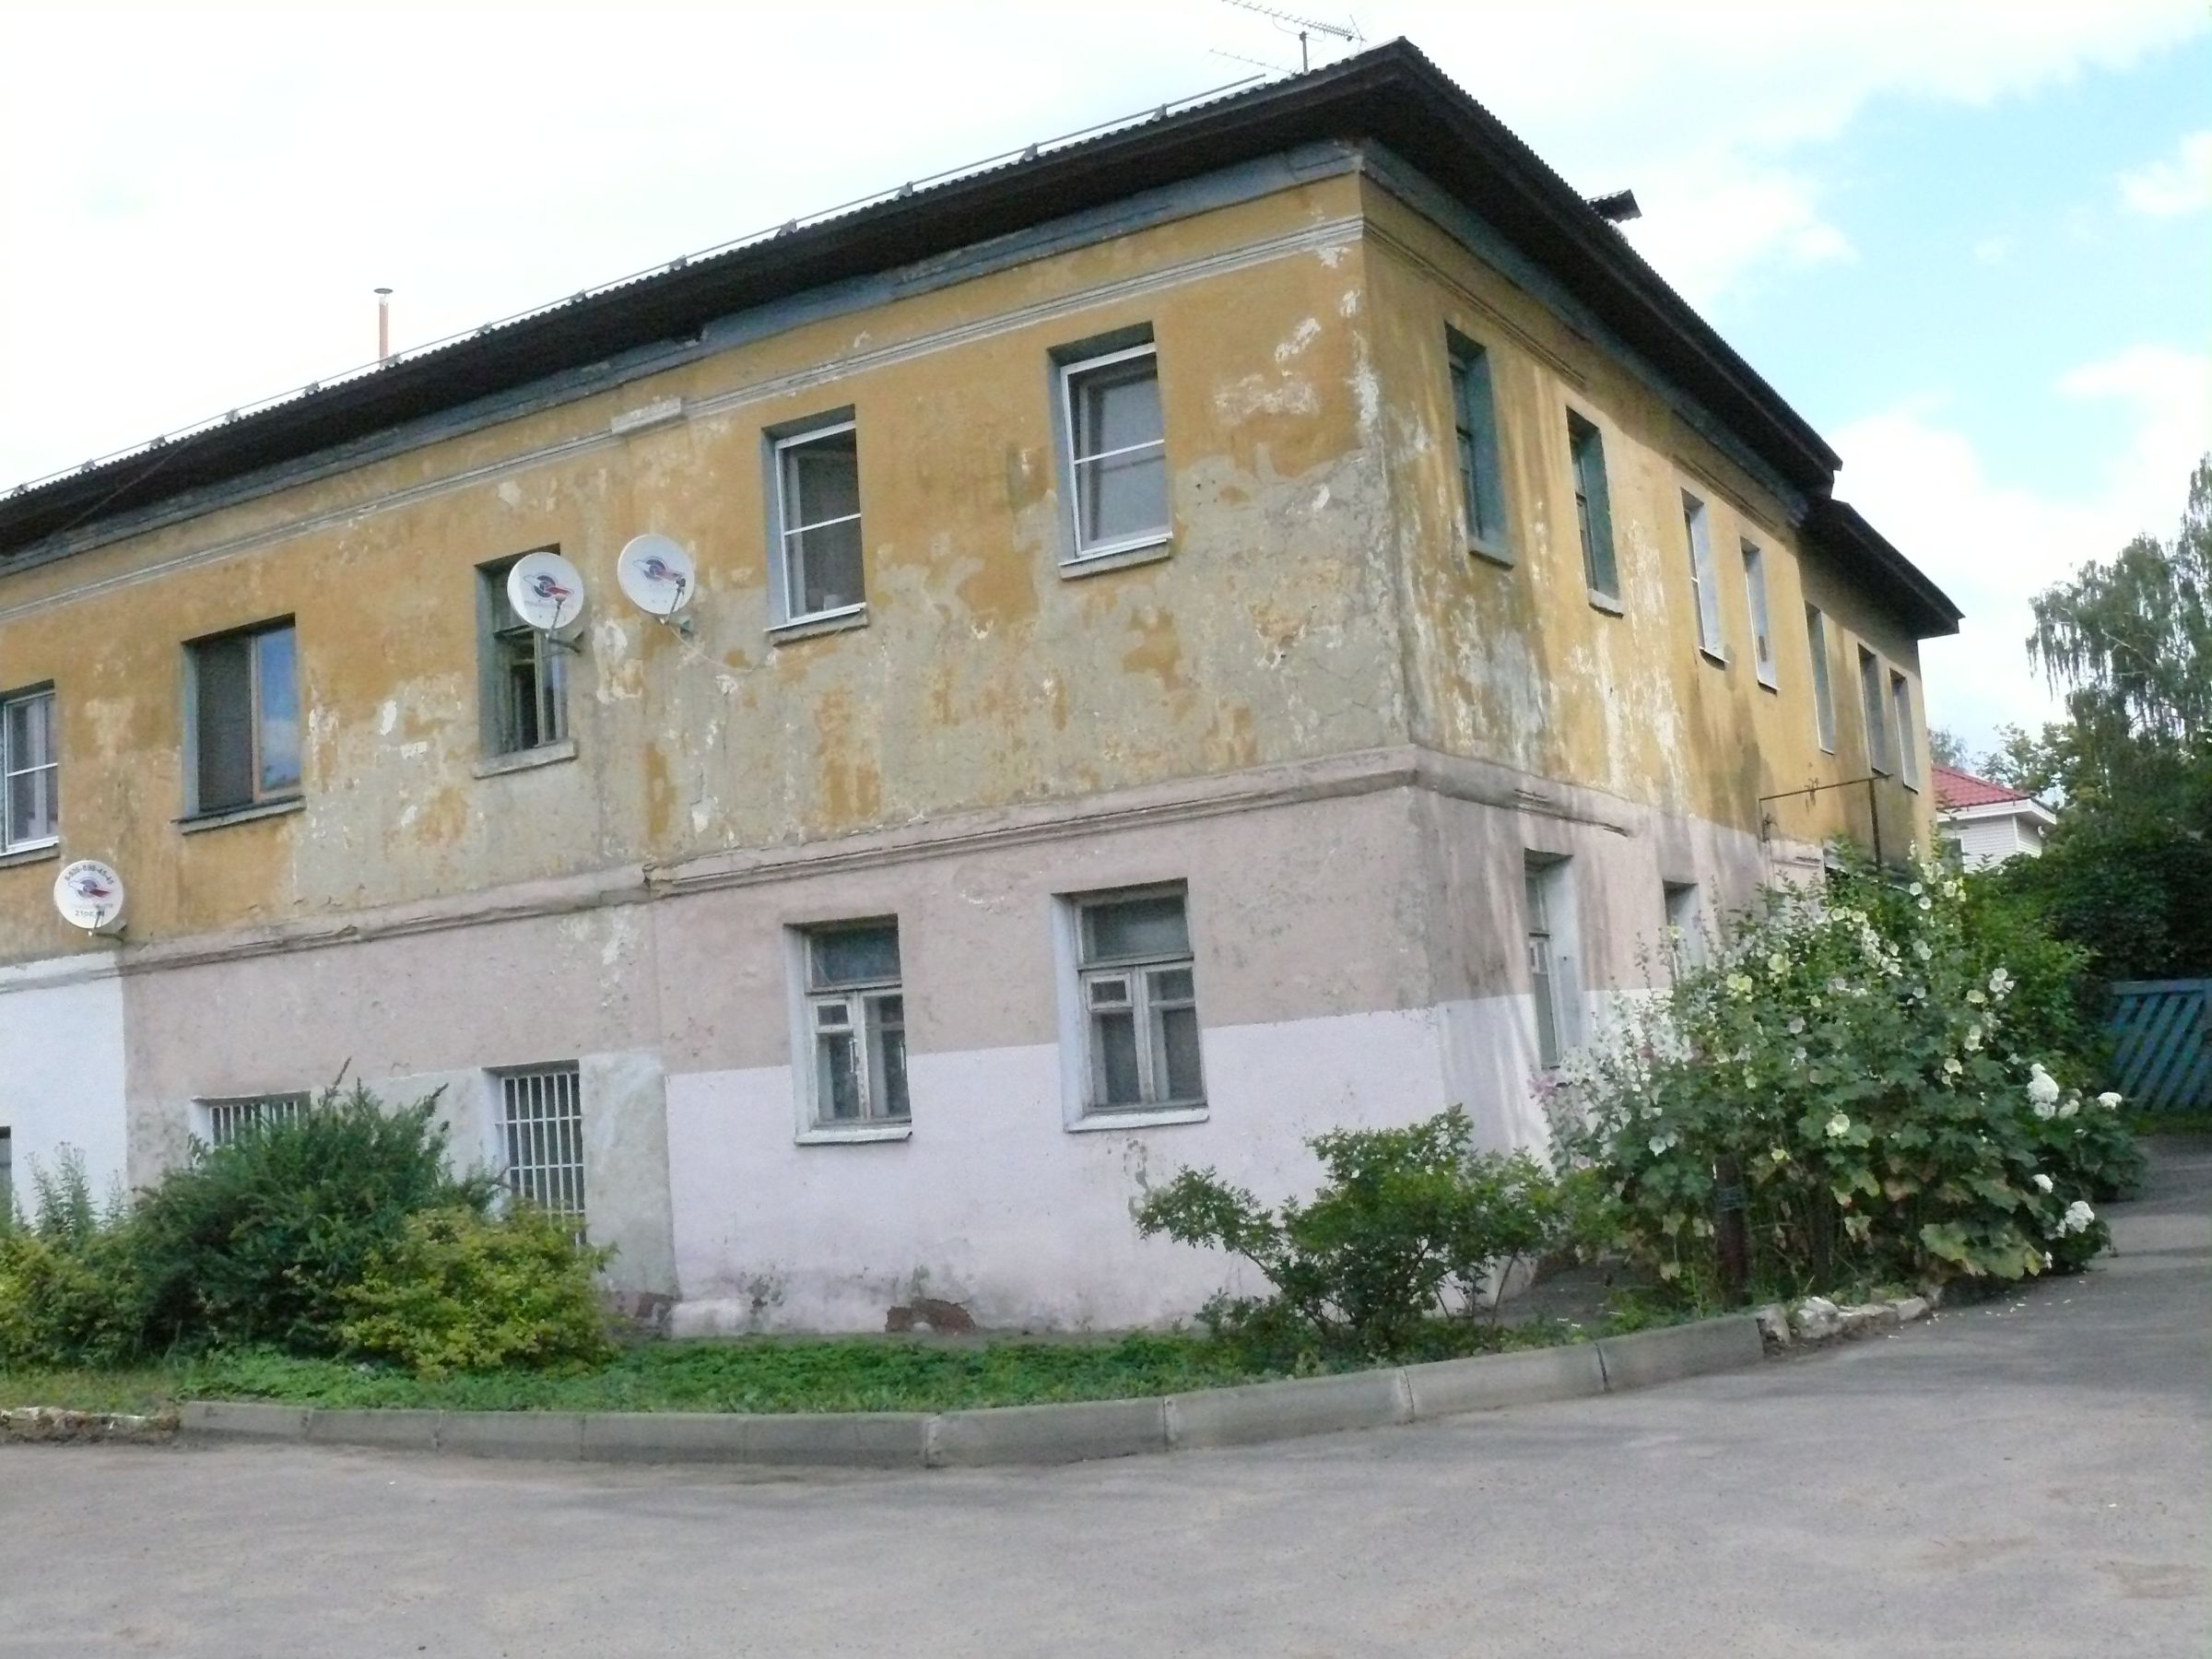 Западный фасад дома Куприянова  ул. Рабочая д. 51а